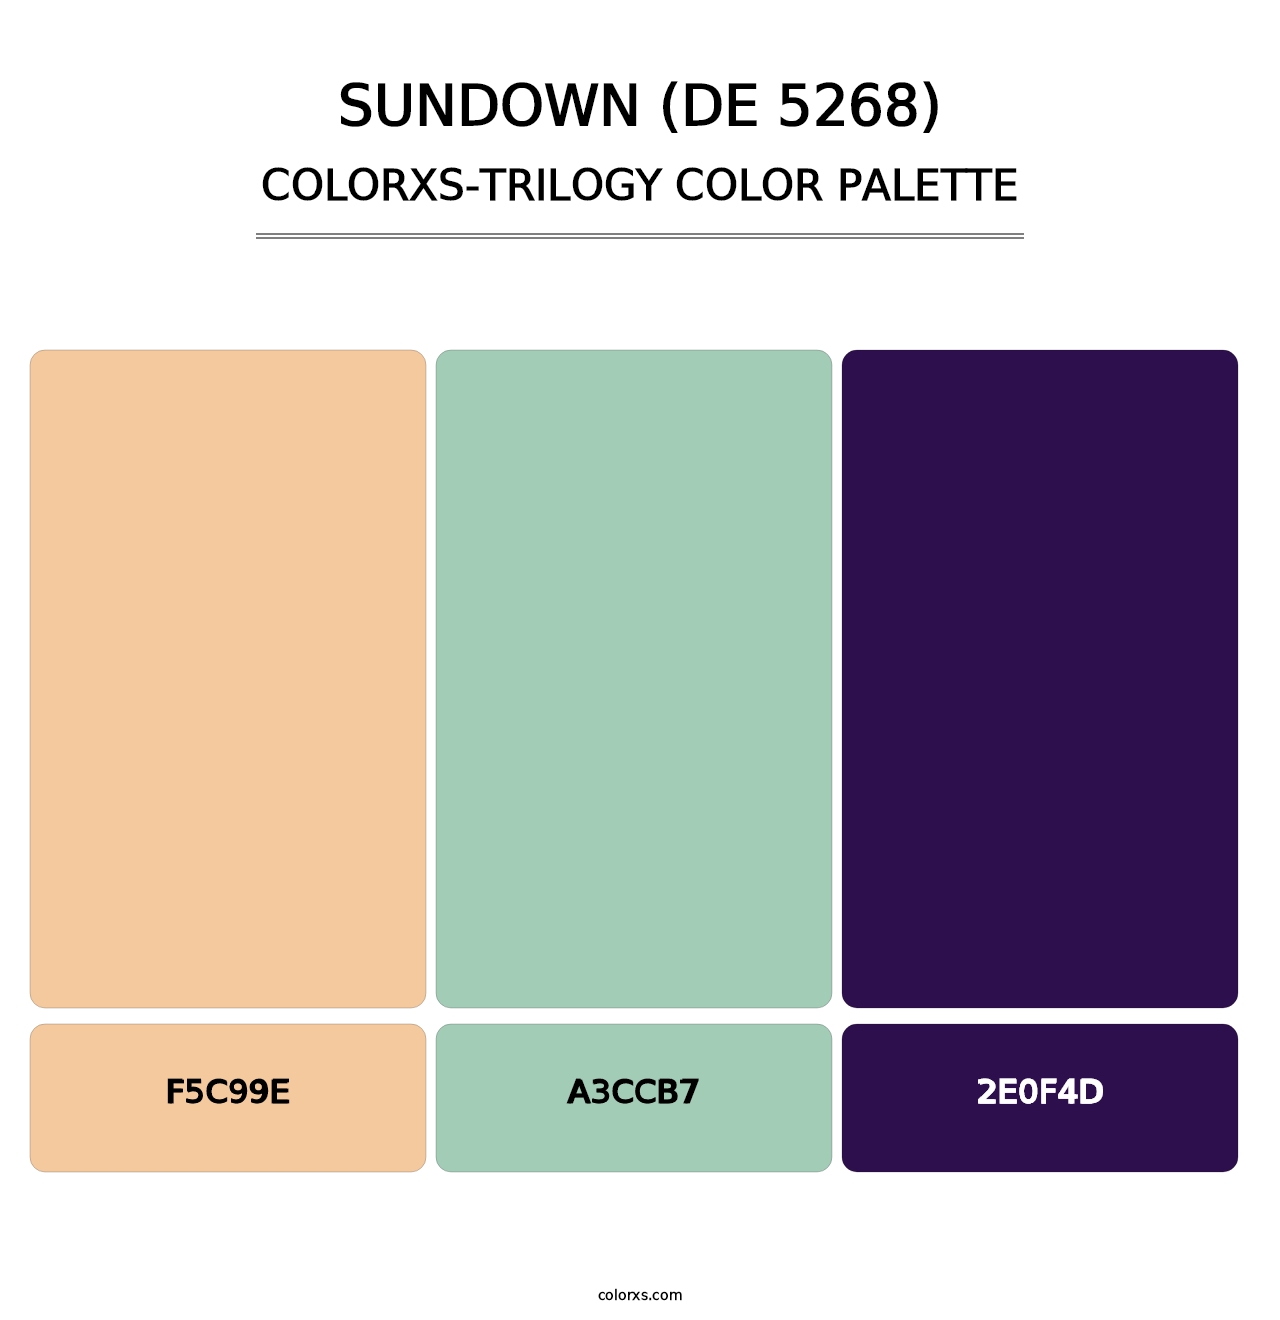 Sundown (DE 5268) - Colorxs Trilogy Palette